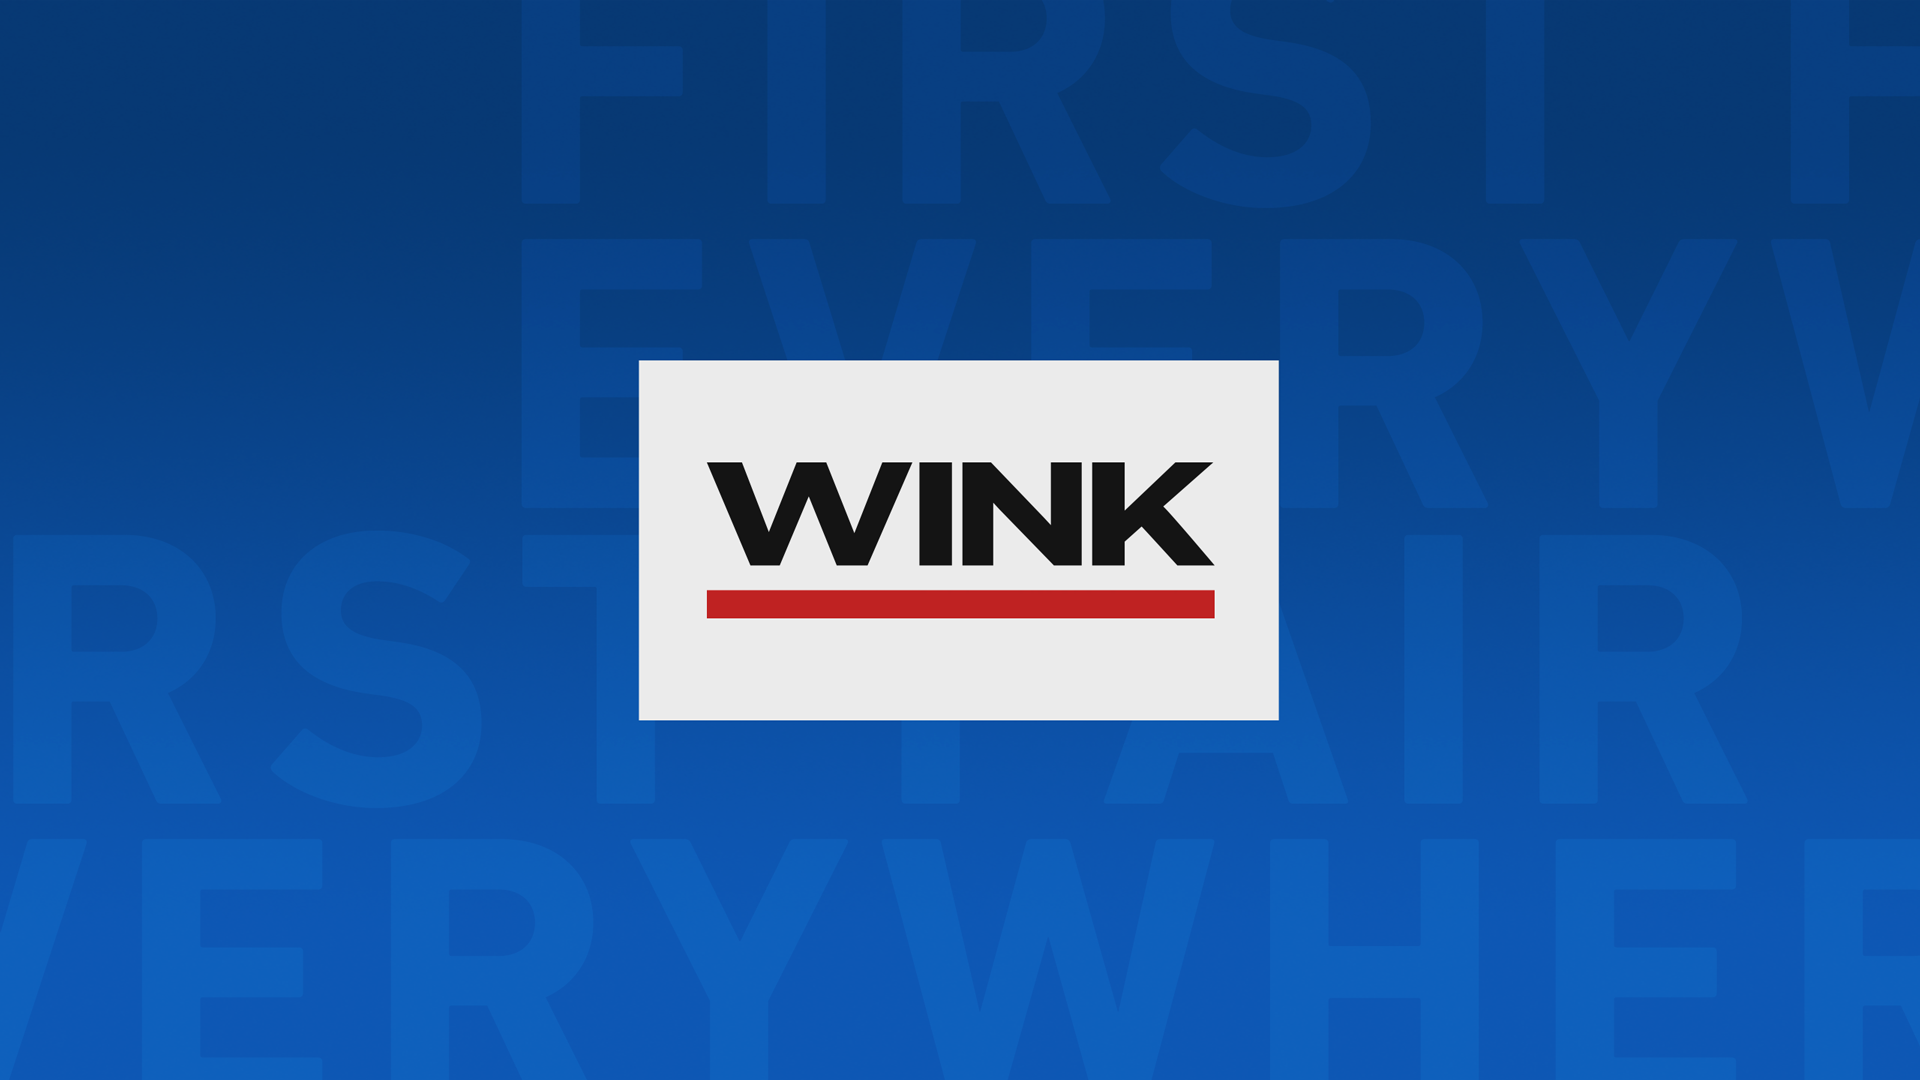 WINK News at 4:30